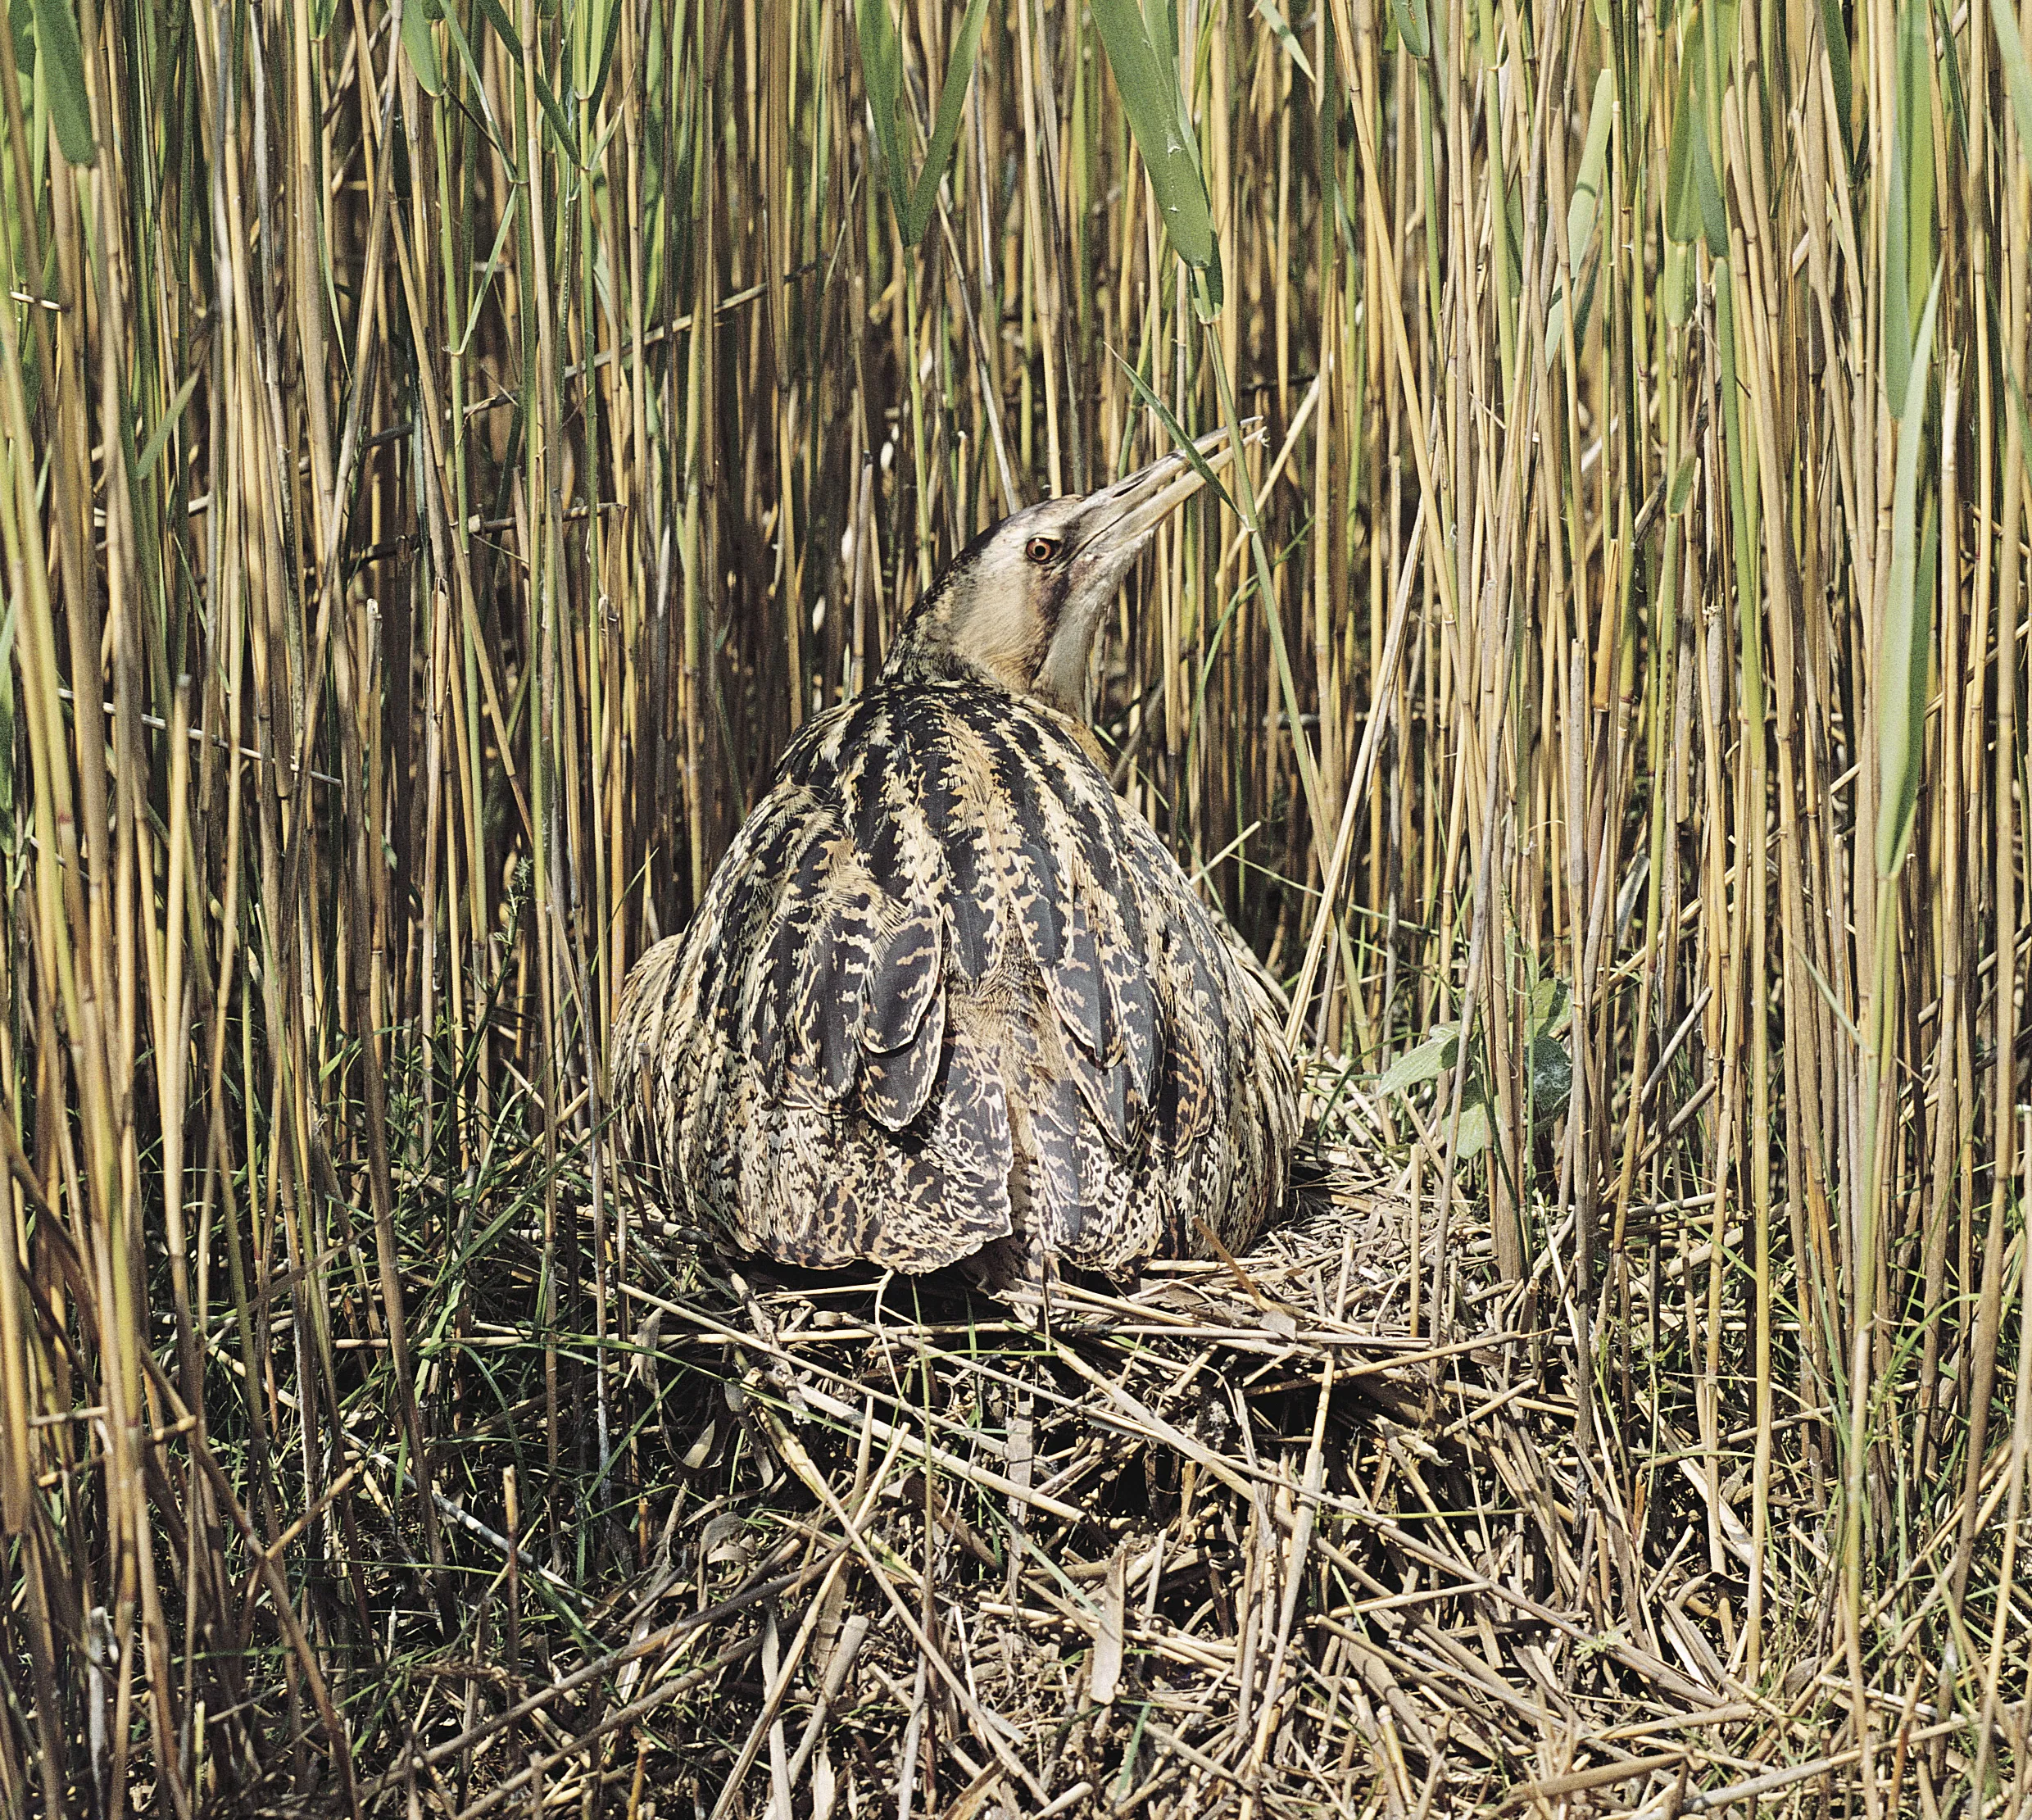 A Bittern on its nest, hidden amongst reeds. 